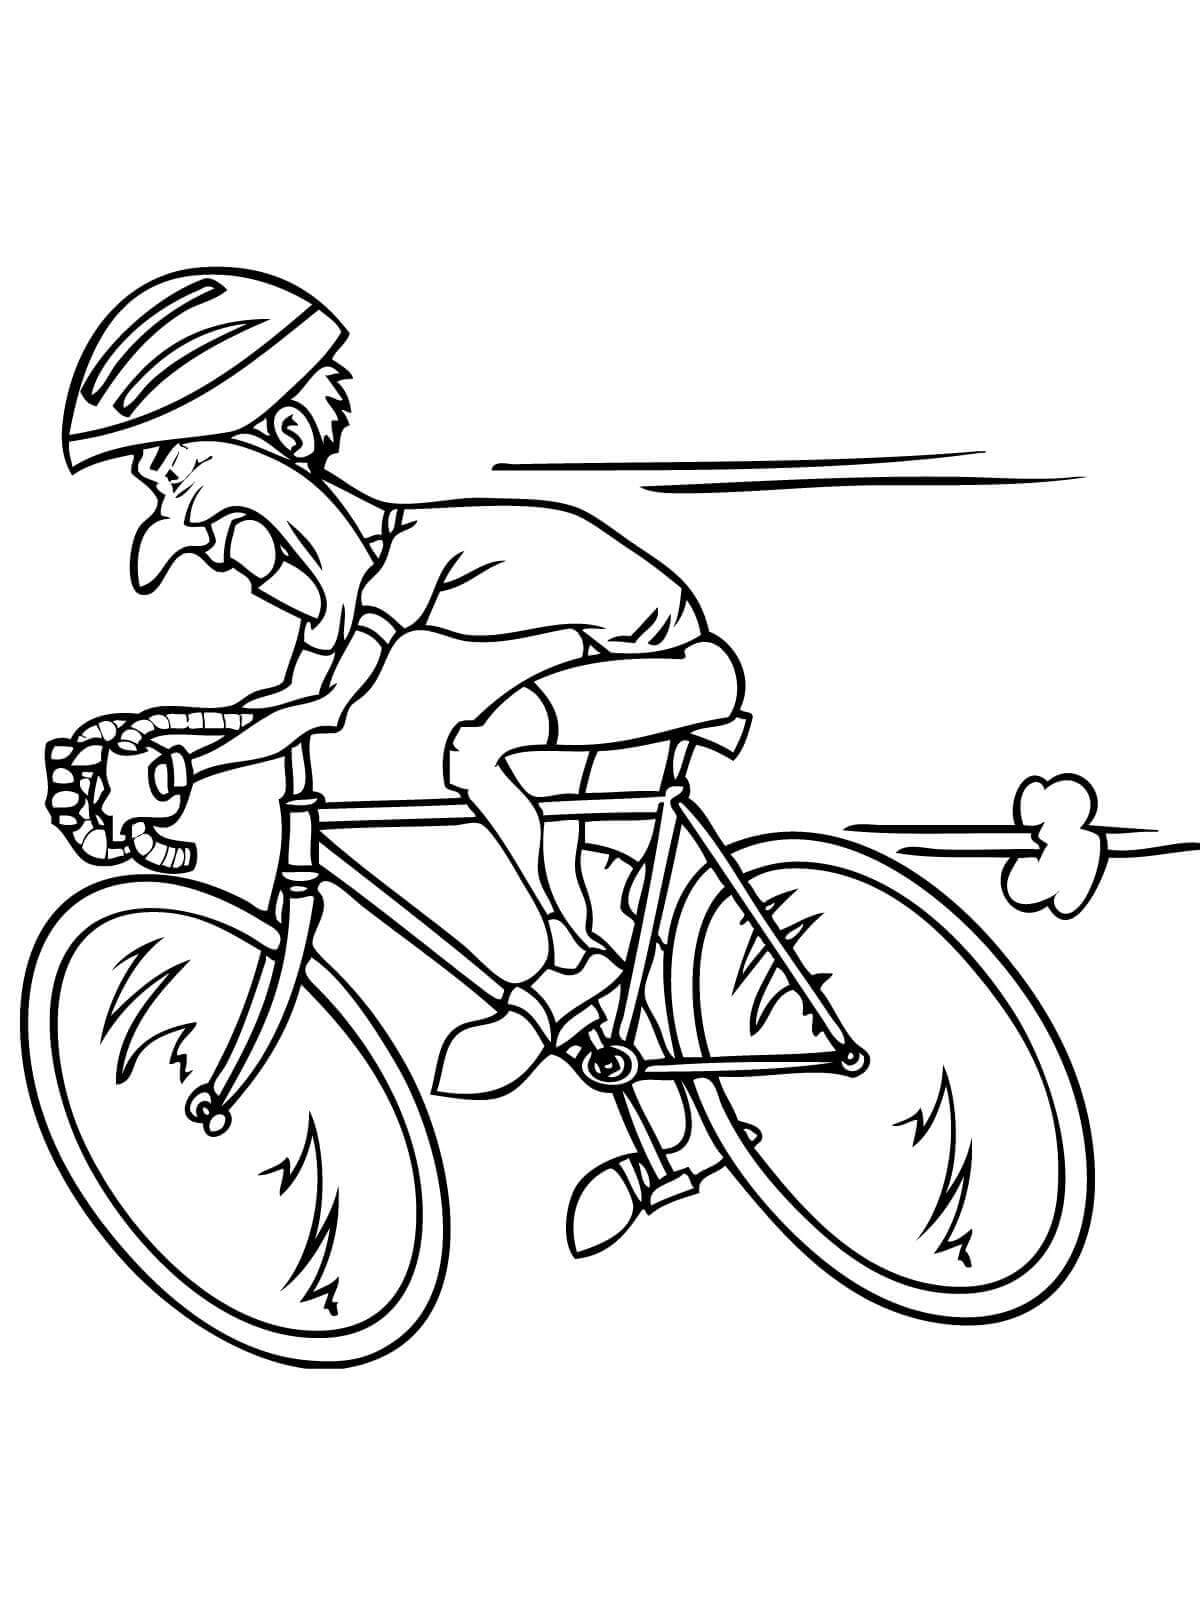 Un ciclista Montando a alta Velocidad